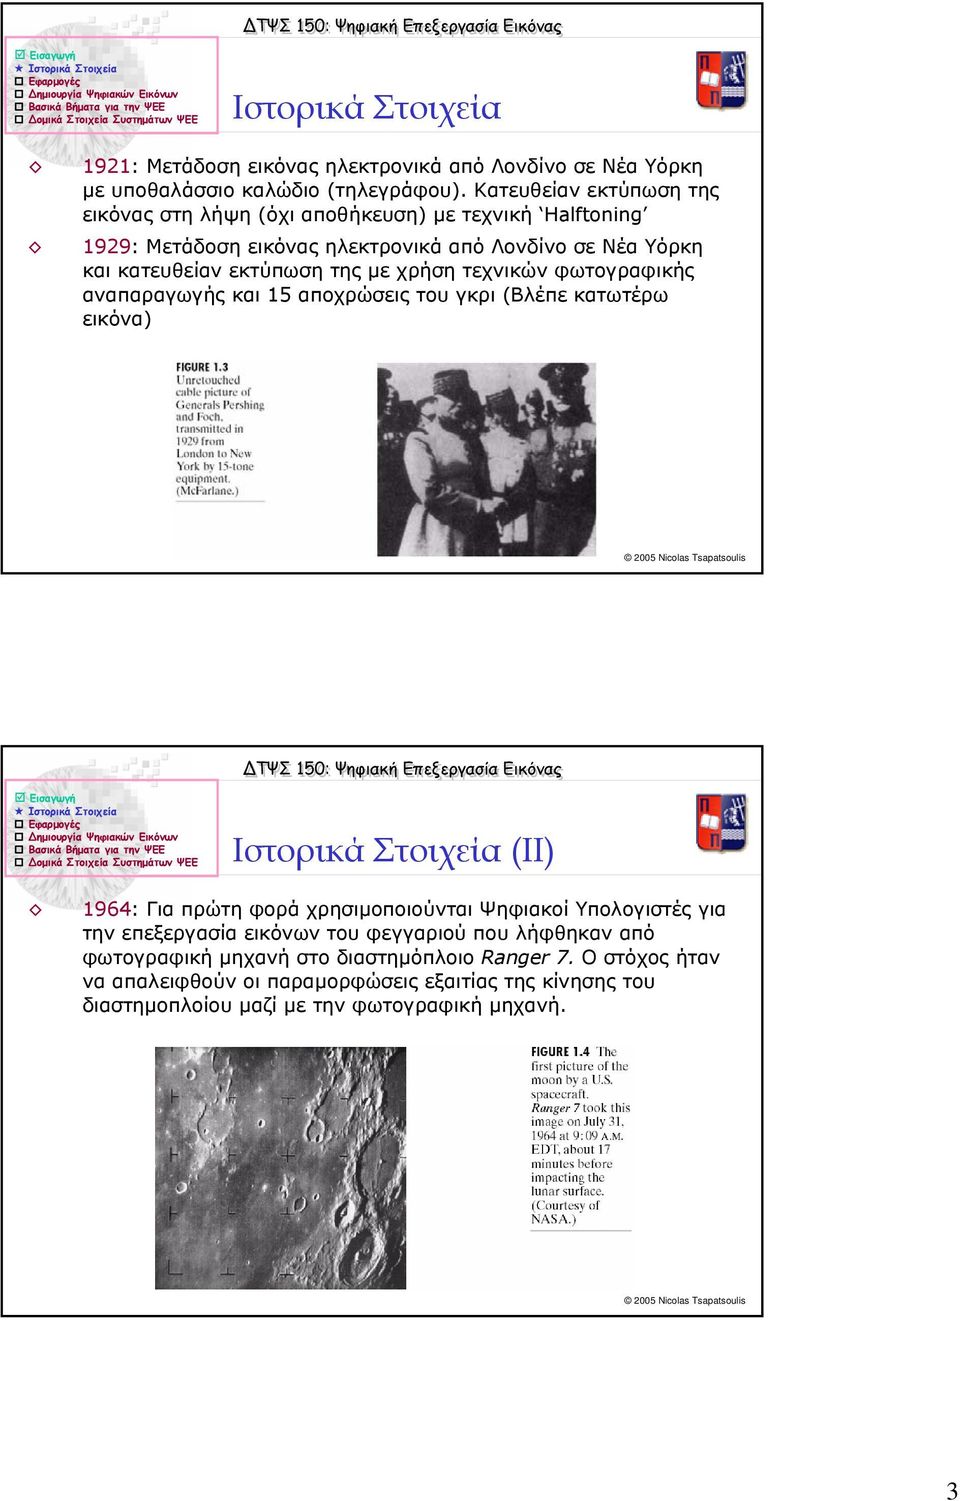 χρήση τεχνικών φωτογραφικής αναπαραγωγής και 15 αποχρώσεις του γκρι (Βλέπε κατωτέρω εικόνα) Ιστορικά Στοιχεία (ΙΙ) 1964: Για πρώτη φορά χρησιµοποιούνται Ψηφιακοί